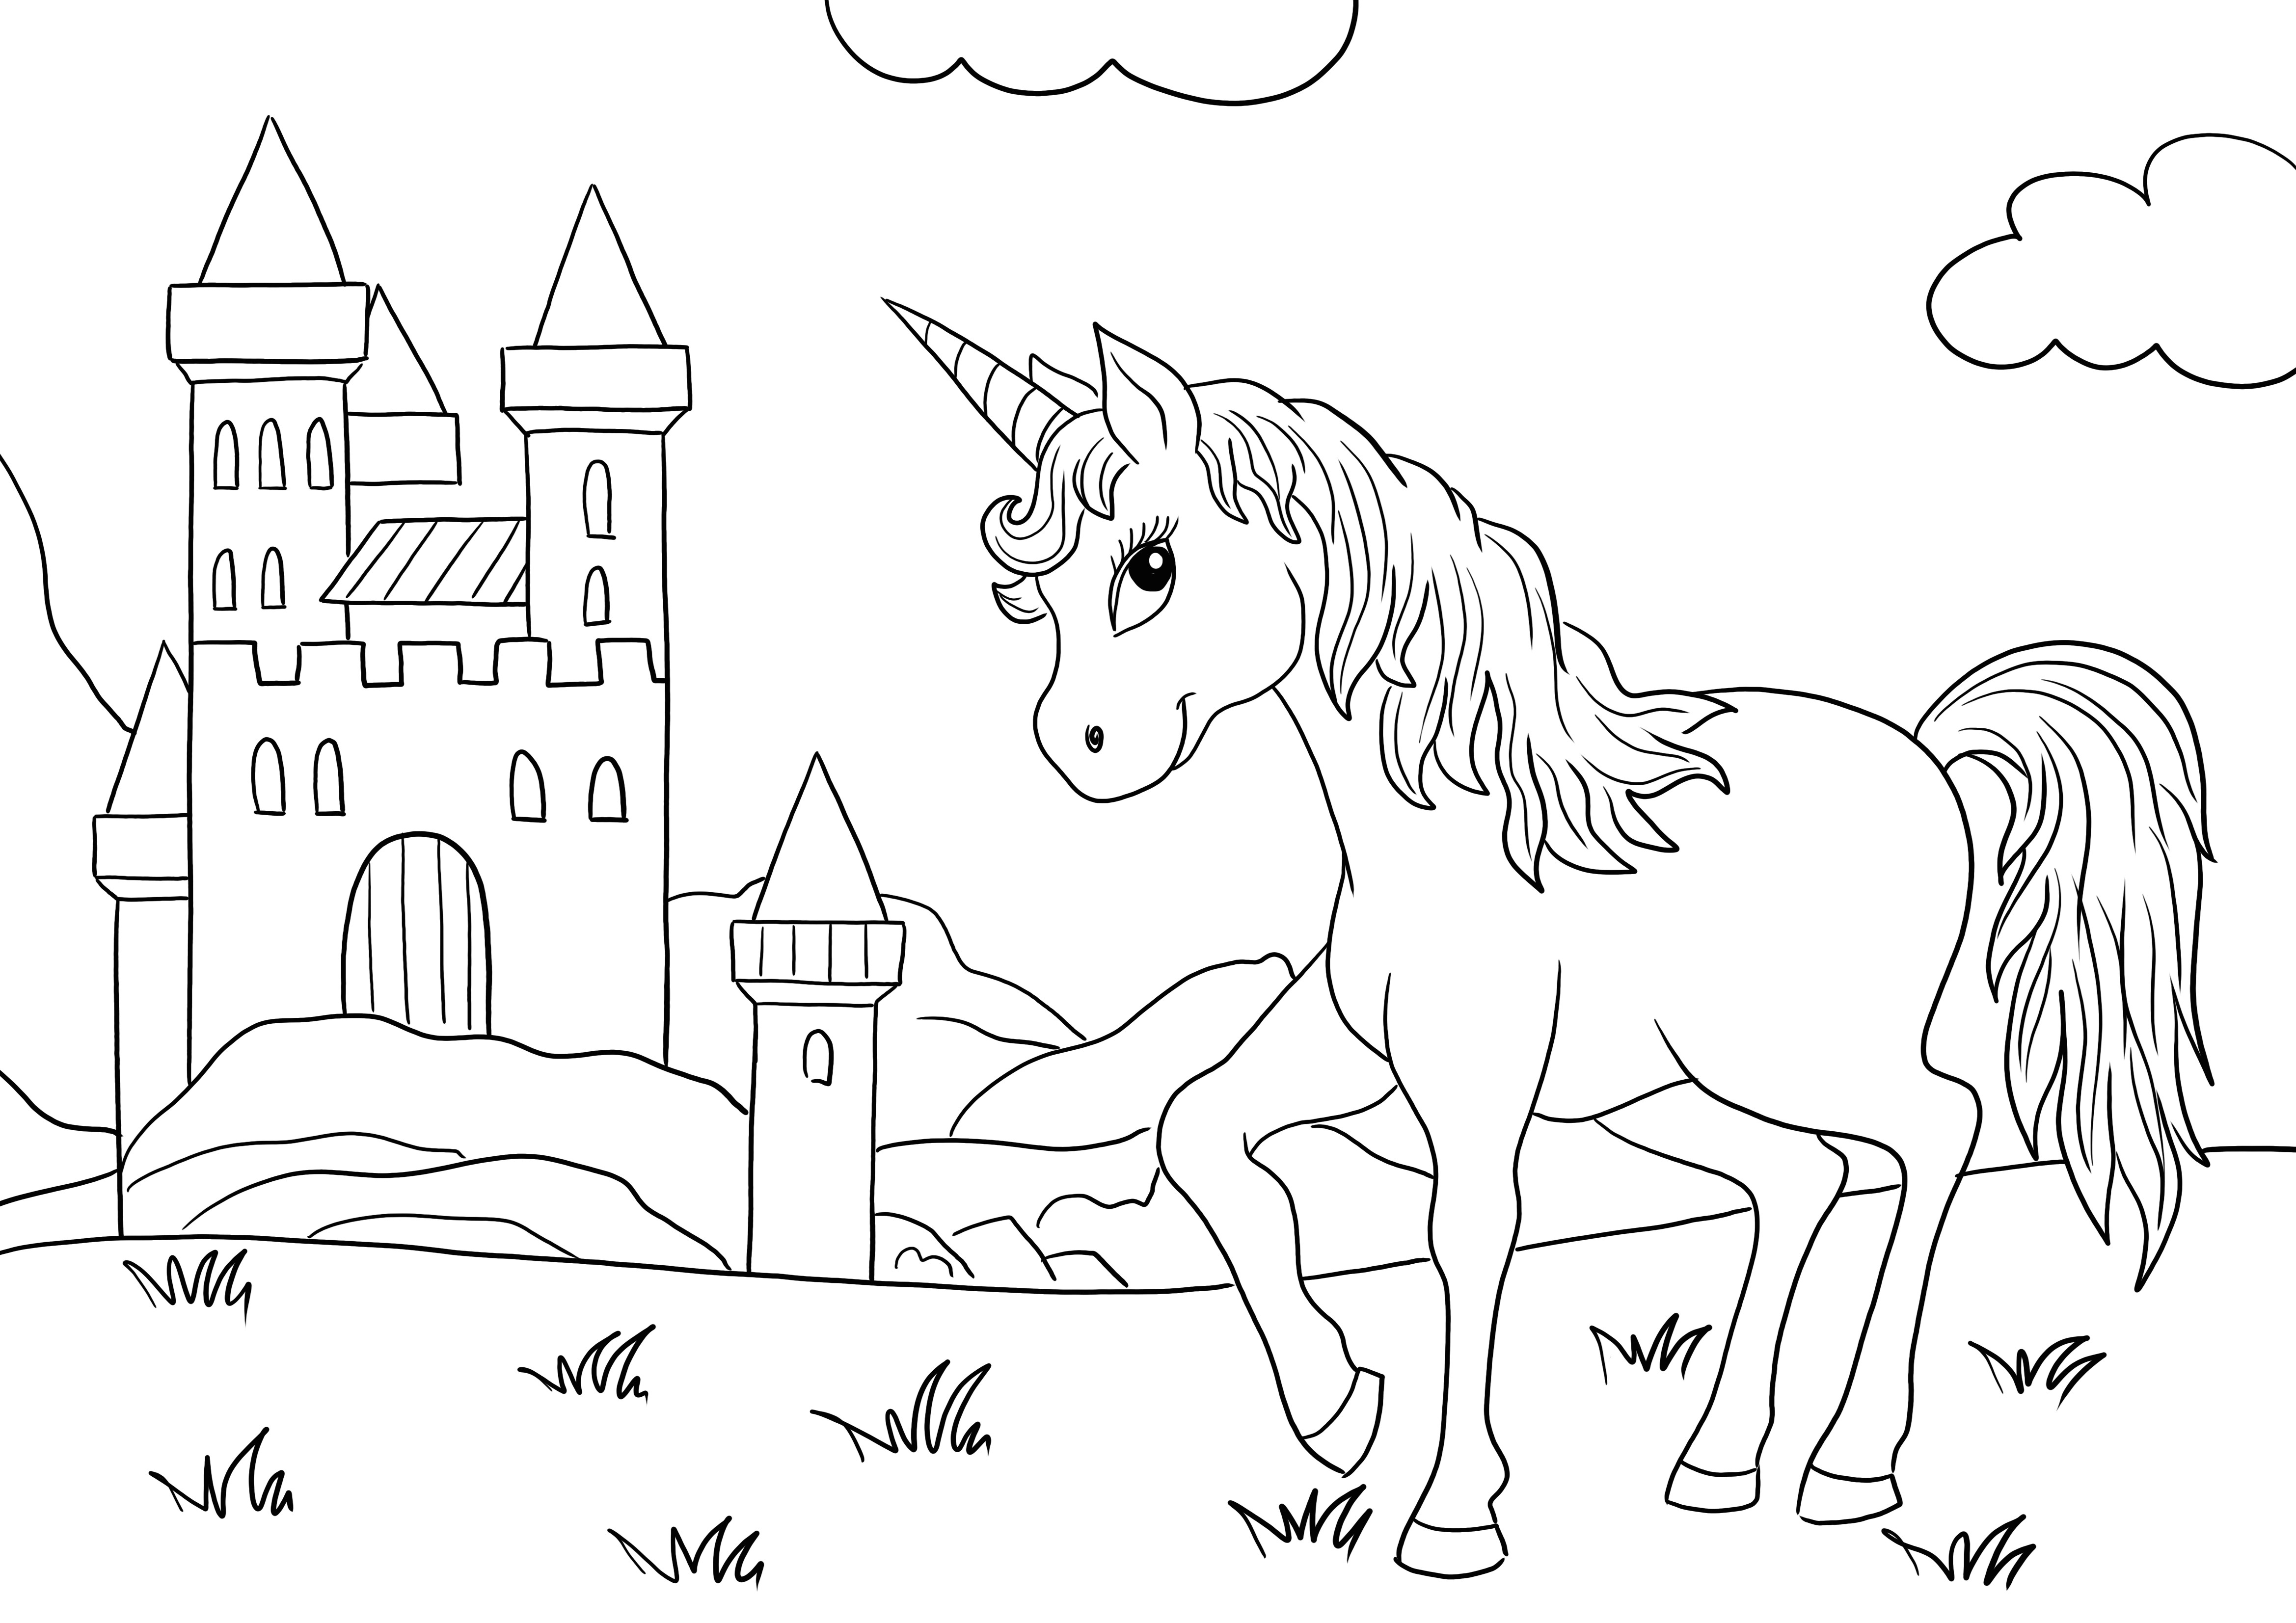 A Majestic Unicorn és a Castle készen áll az ingyenes nyomtatásra és színezésre